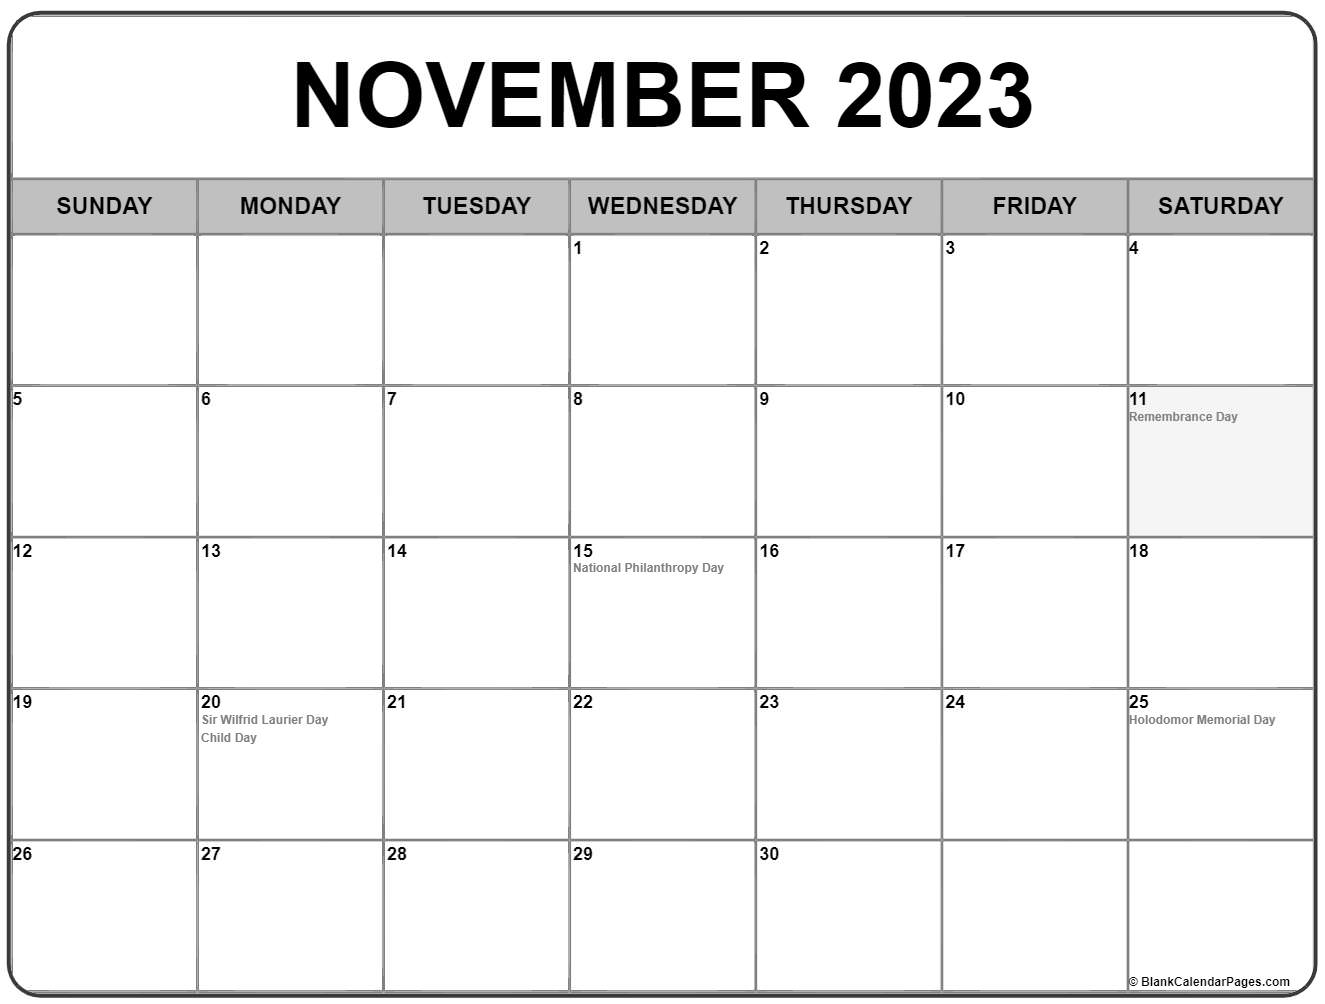 november-2023-calendar-printable-wiki-pelajaran